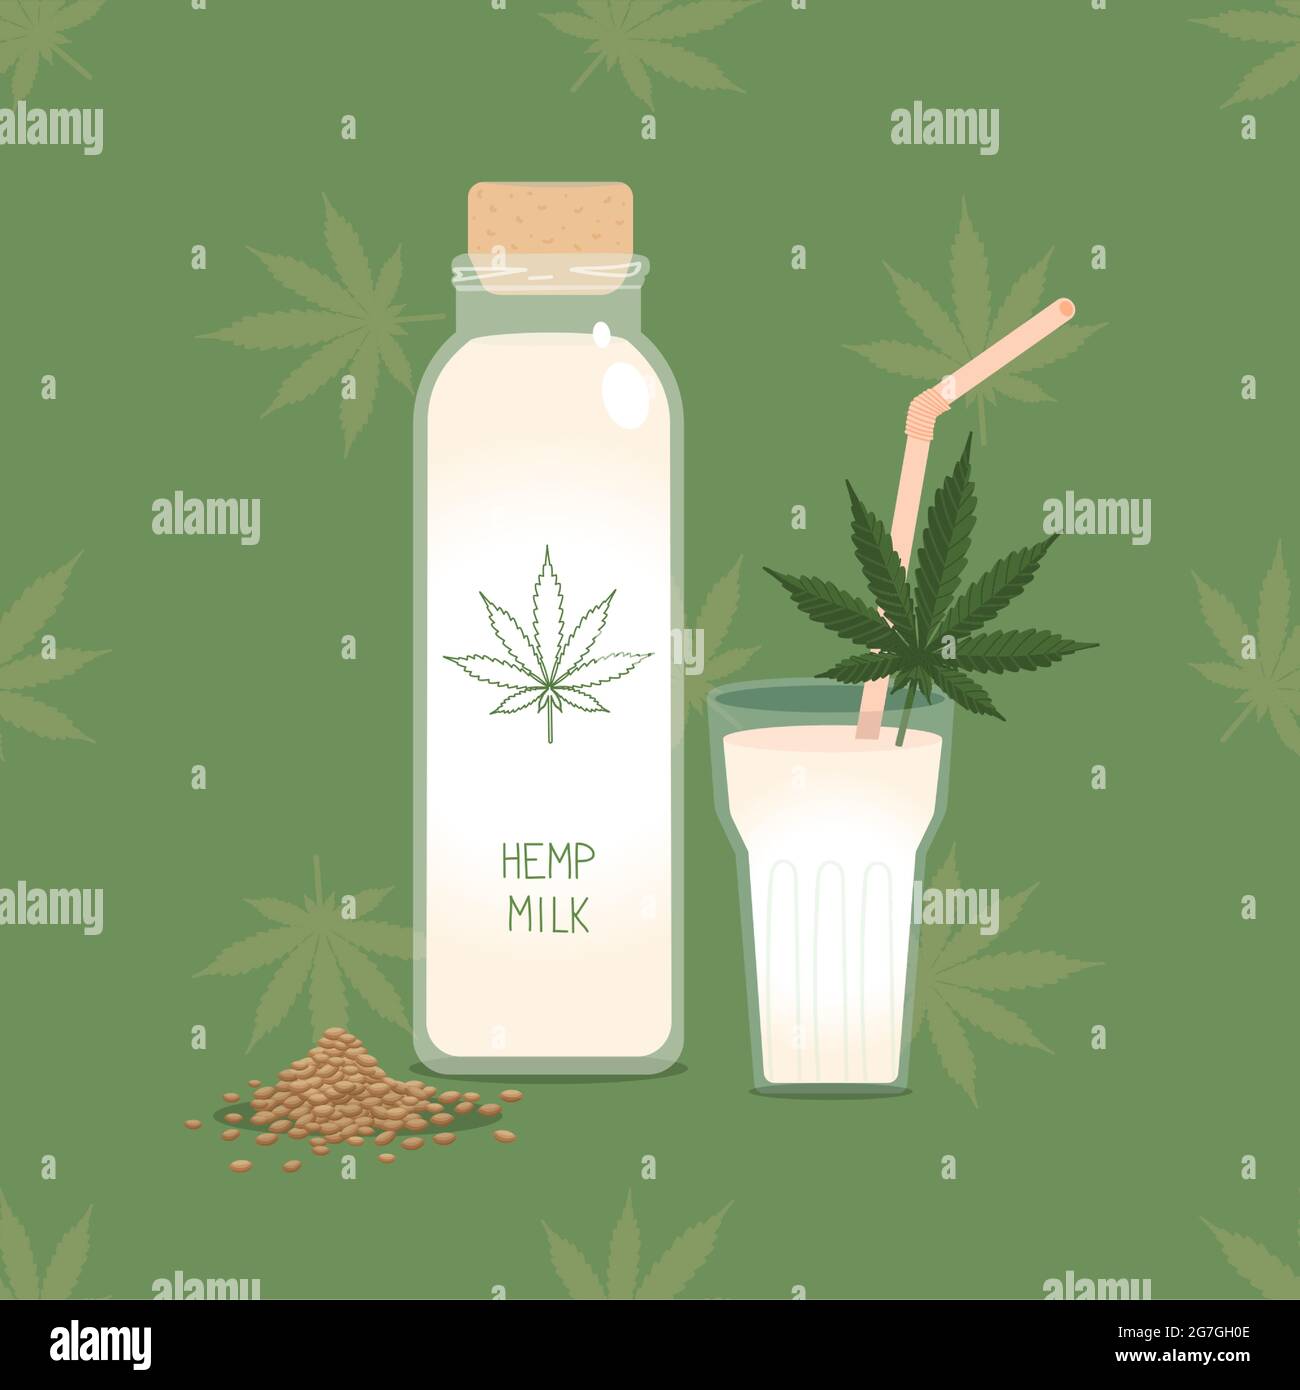 Hanfmilch. Flasche Hanfmilch auf pflanzlicher Basis mit Glas und Stroh, Samen und Cannabisblatt. Alternative gesunde Pflanzenmilch für Veganer Stock Vektor